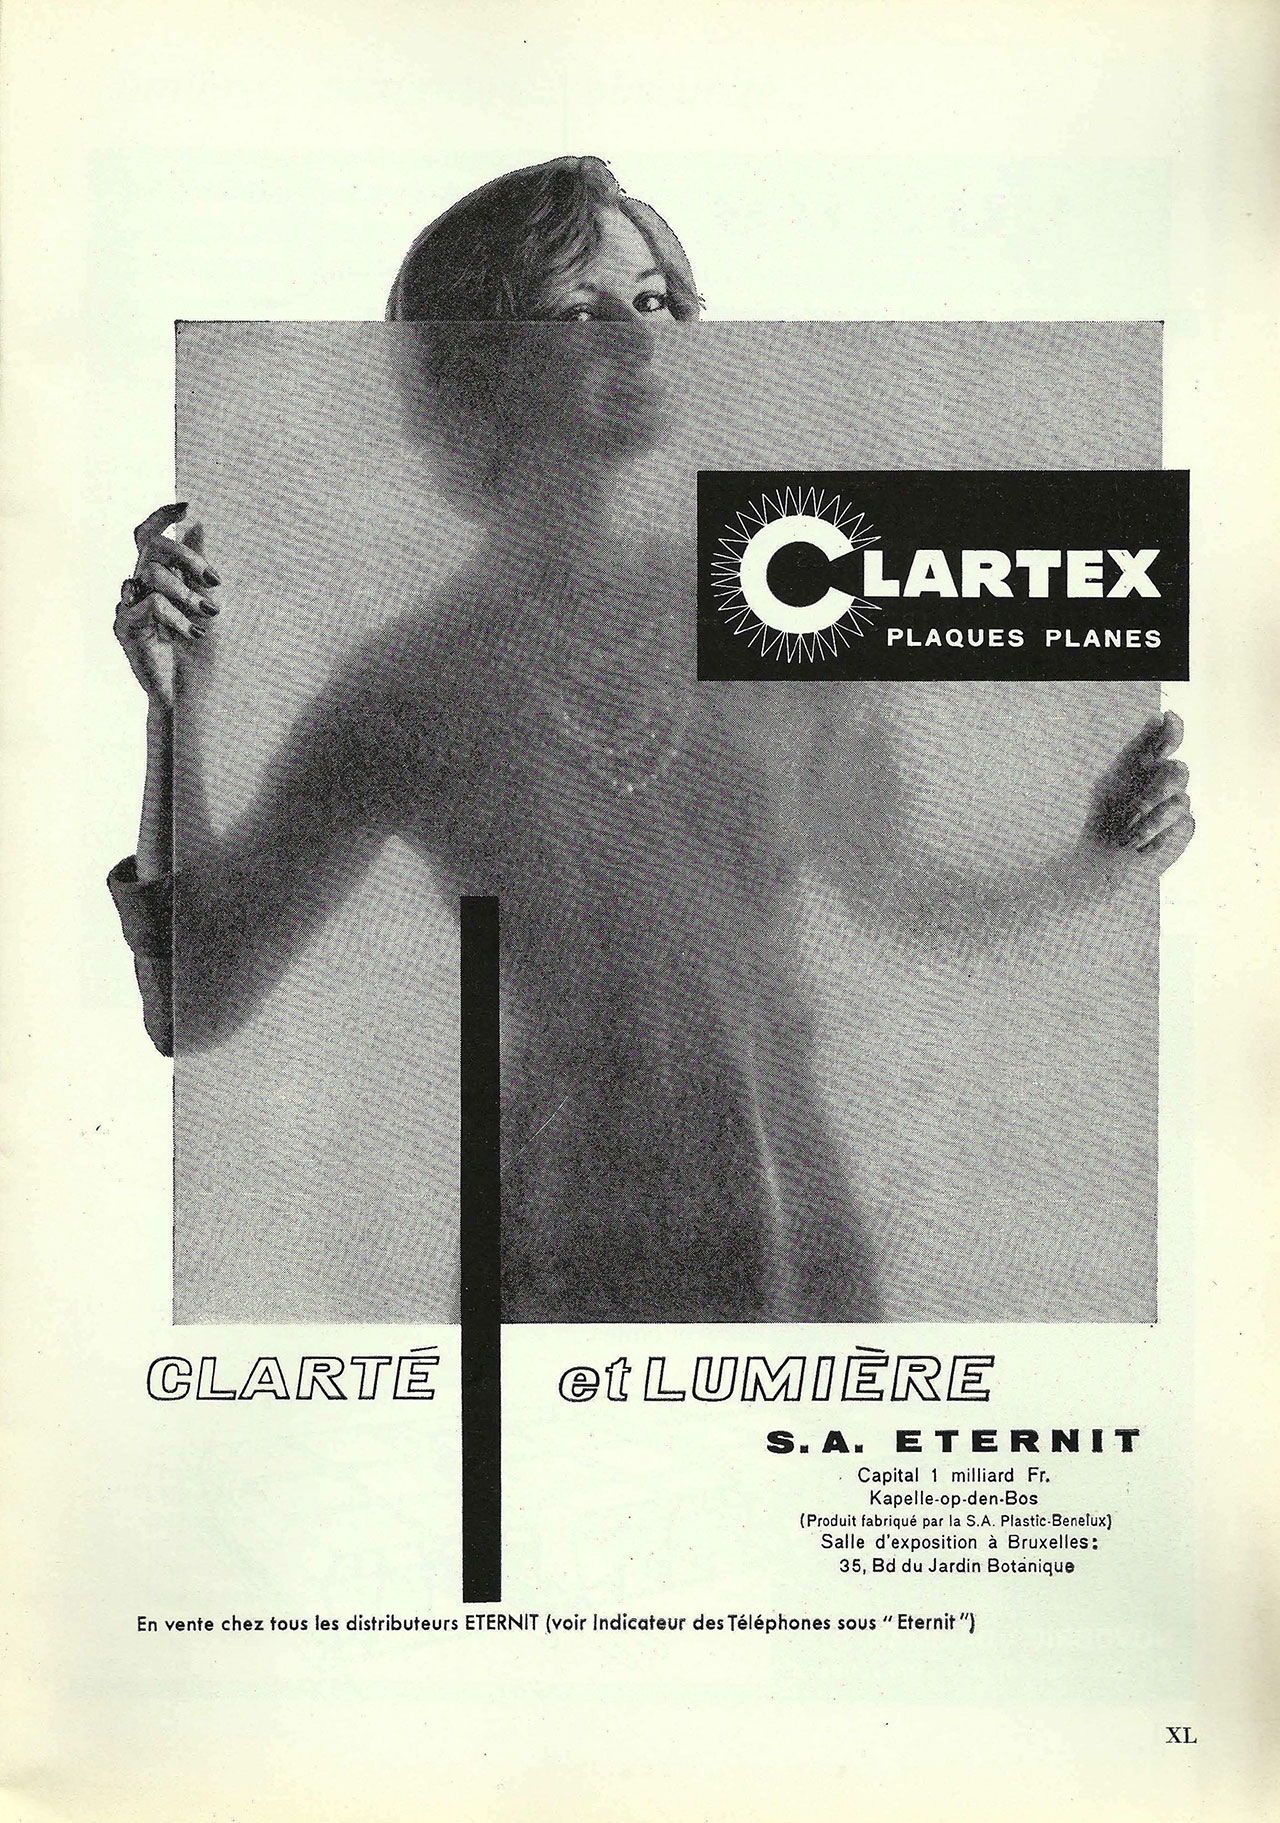 Clartex